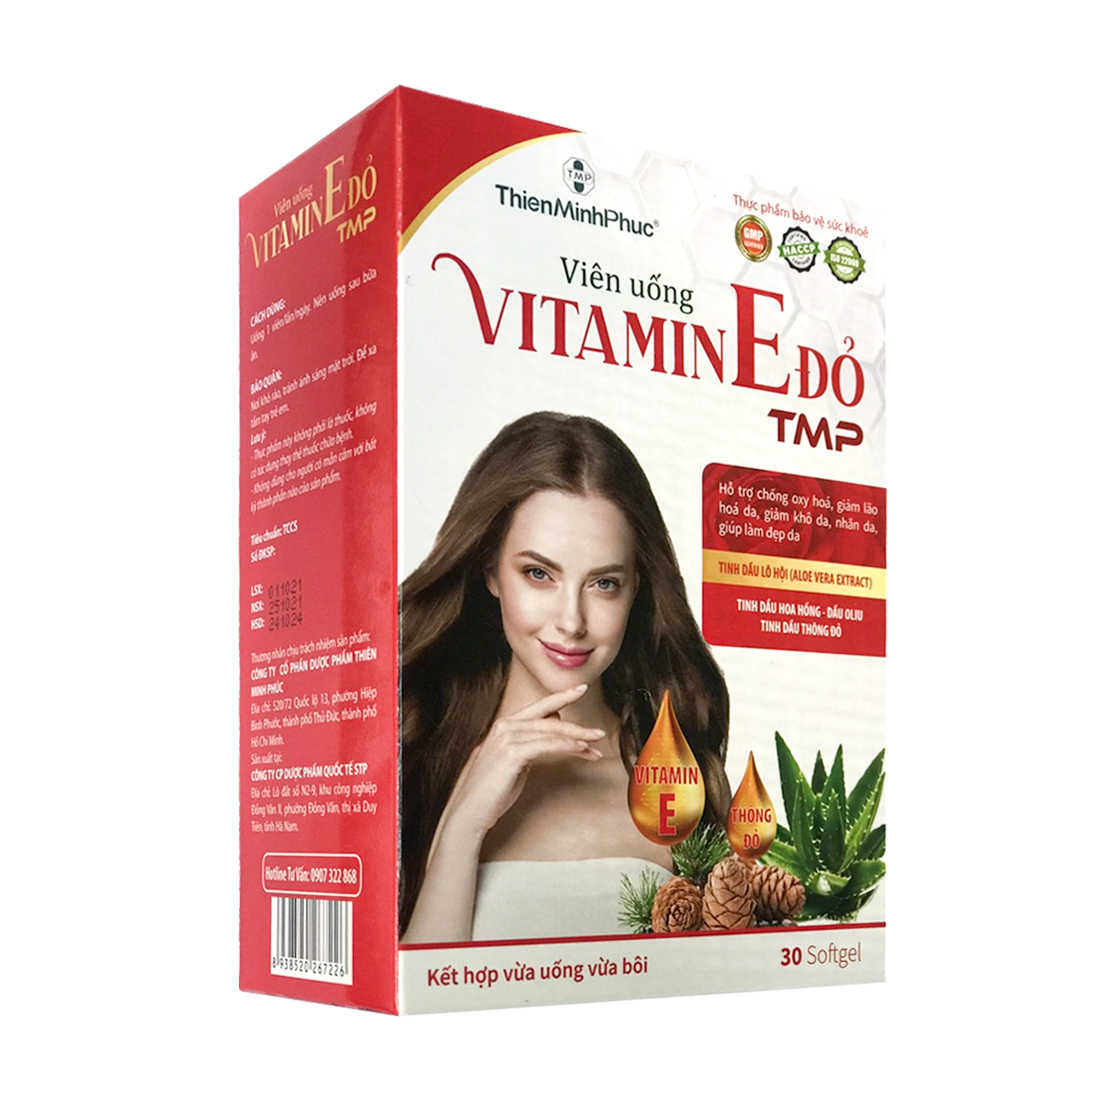 Viên uống TMP Vitamin E Đỏ hỗ trợ chống lão hóa (Hộp 30 viên)